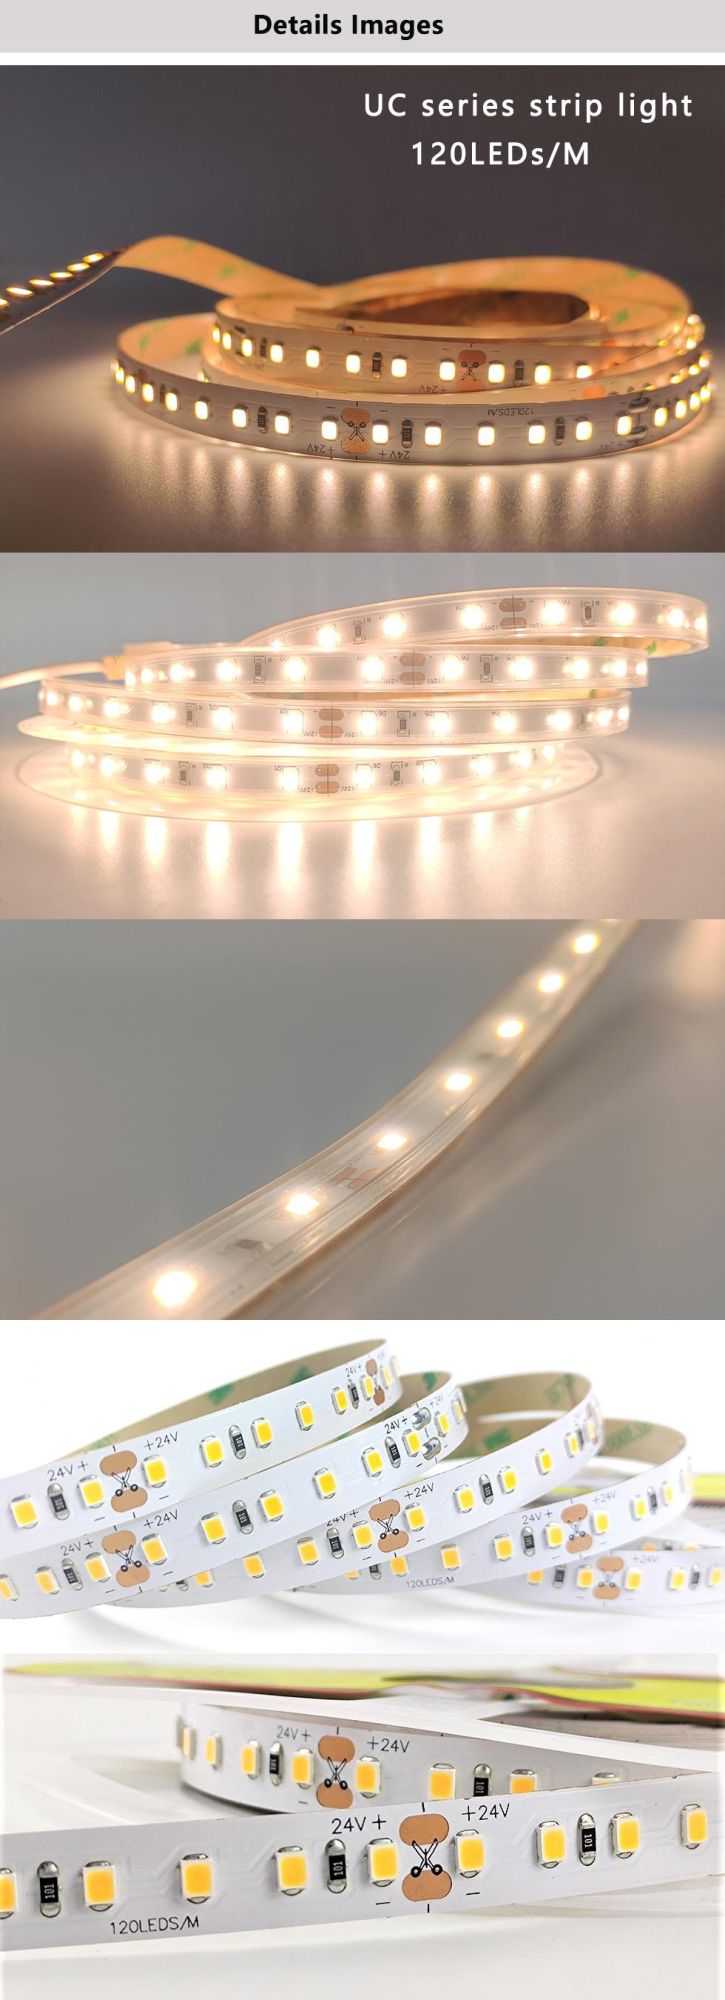 LED Strip Light for Living Room Ceiling